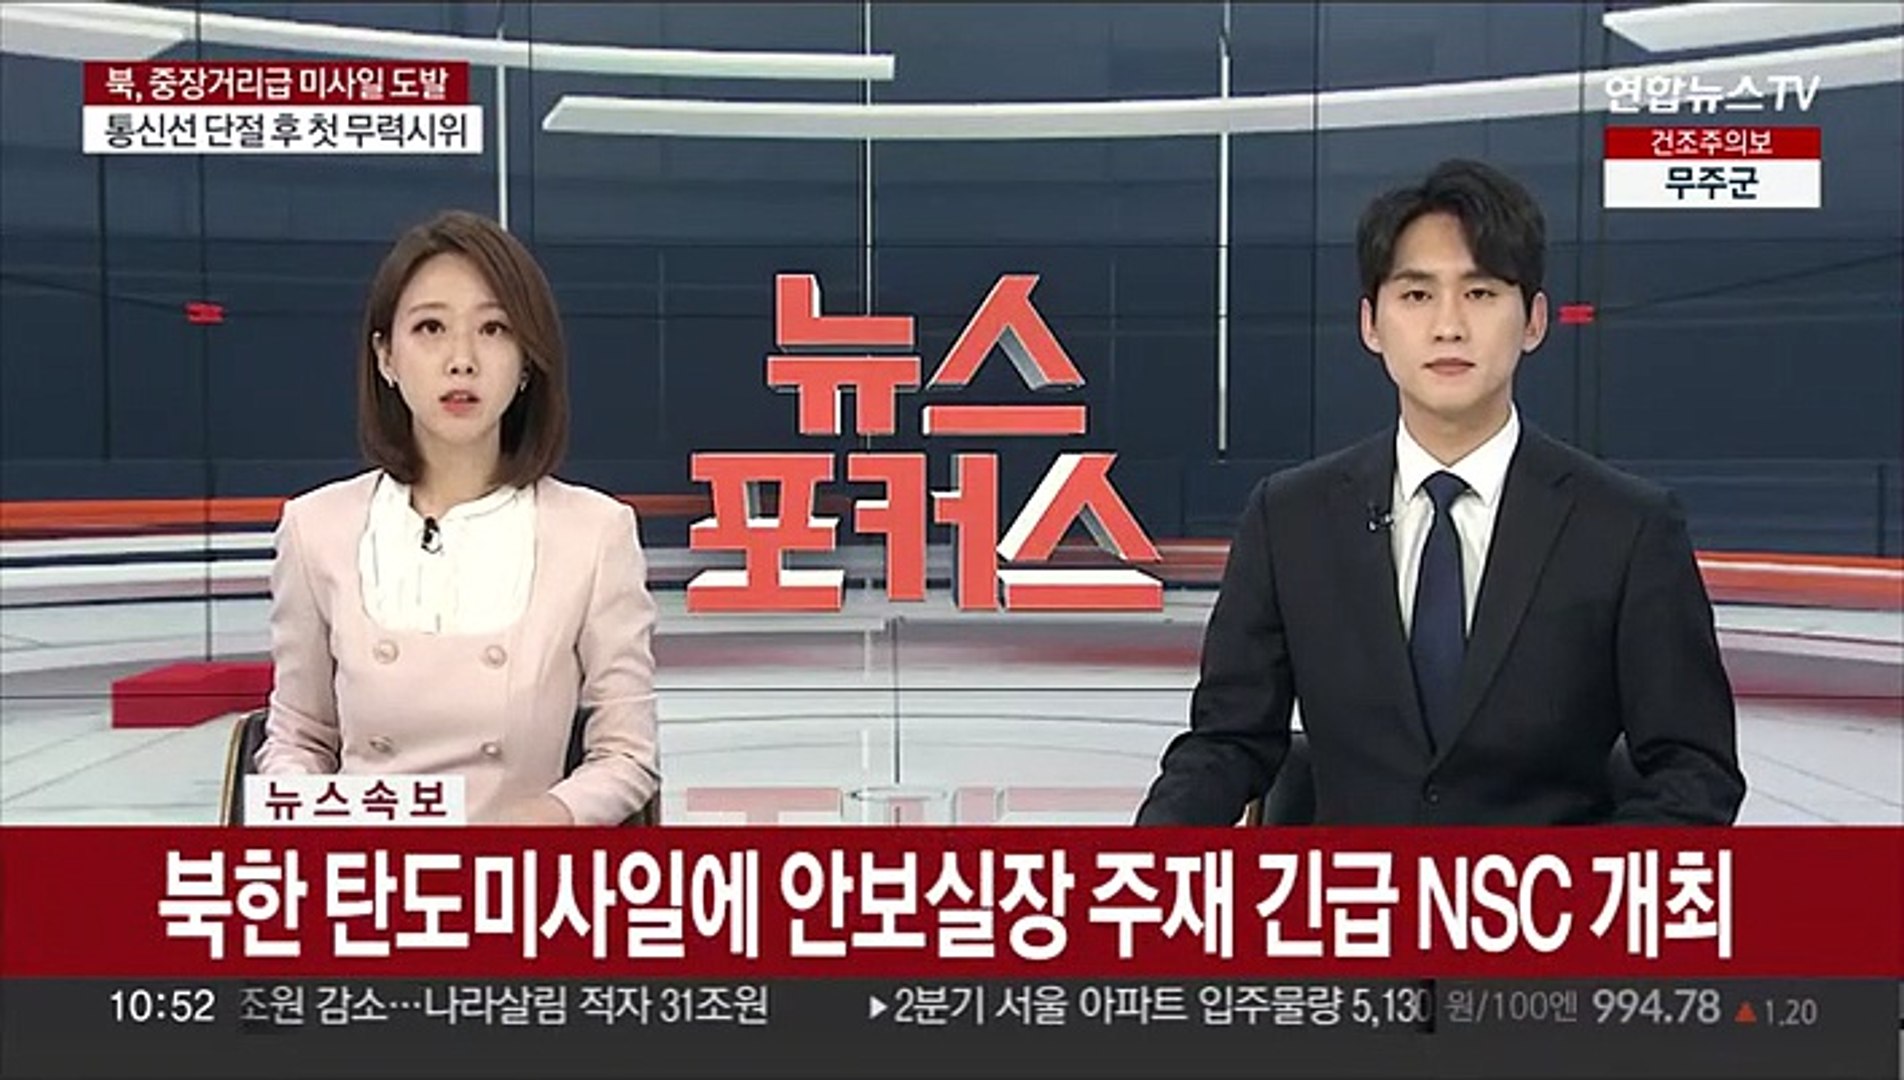 속보] 북 탄도미사일에 안보실장 주재 긴급 Nsc 개최 - 동영상 Dailymotion